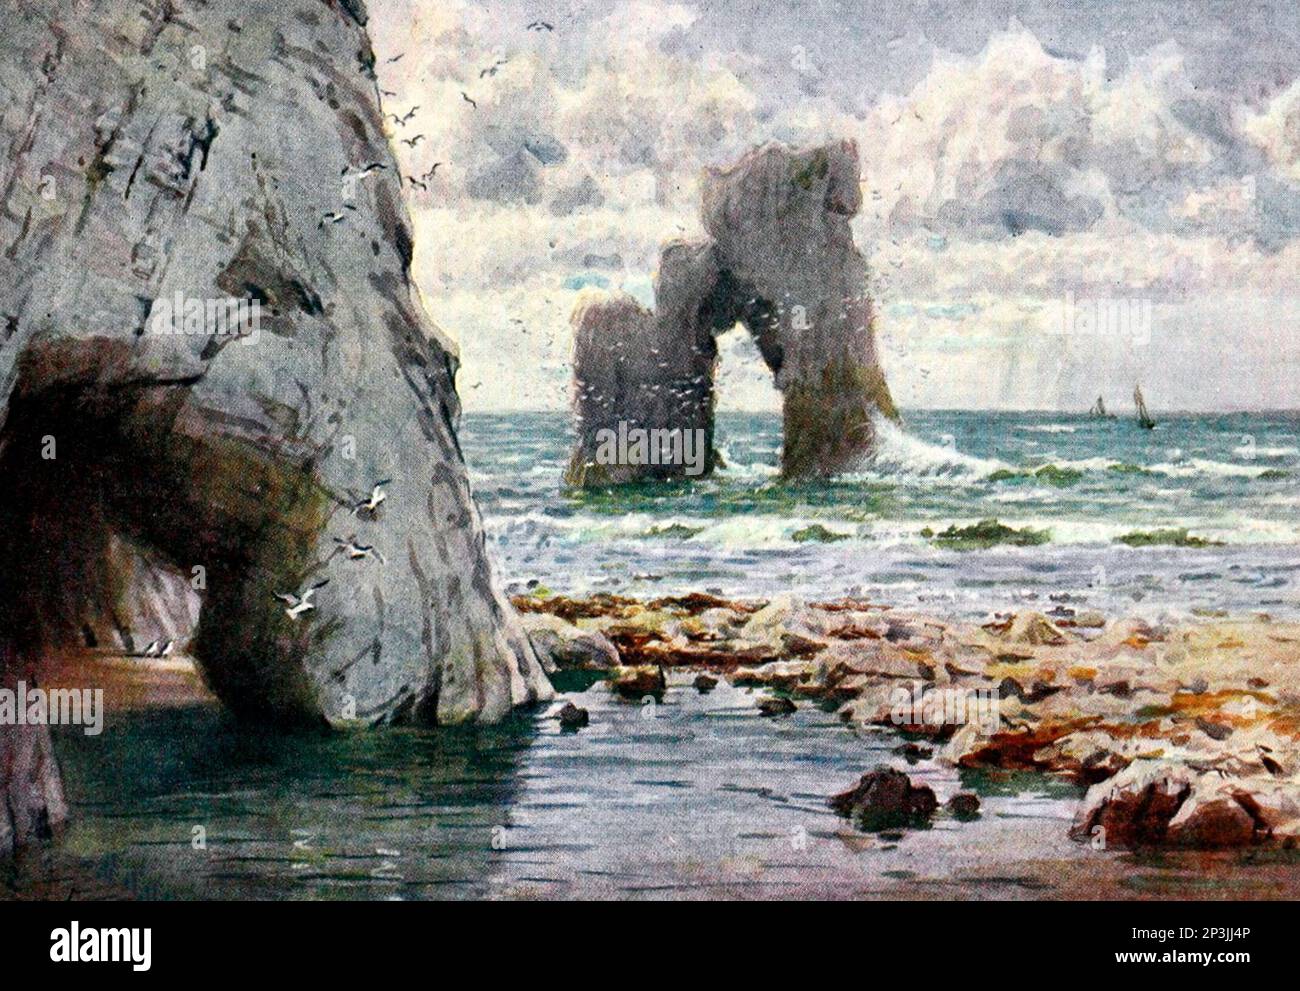 Freshwater Bay, île de Wight, Royaume-Uni, vers 1911. Ils sont à l'extrémité ouest de l'île où la craie forme les falaises, qui sont mangées dans des arches pittoresques Banque D'Images